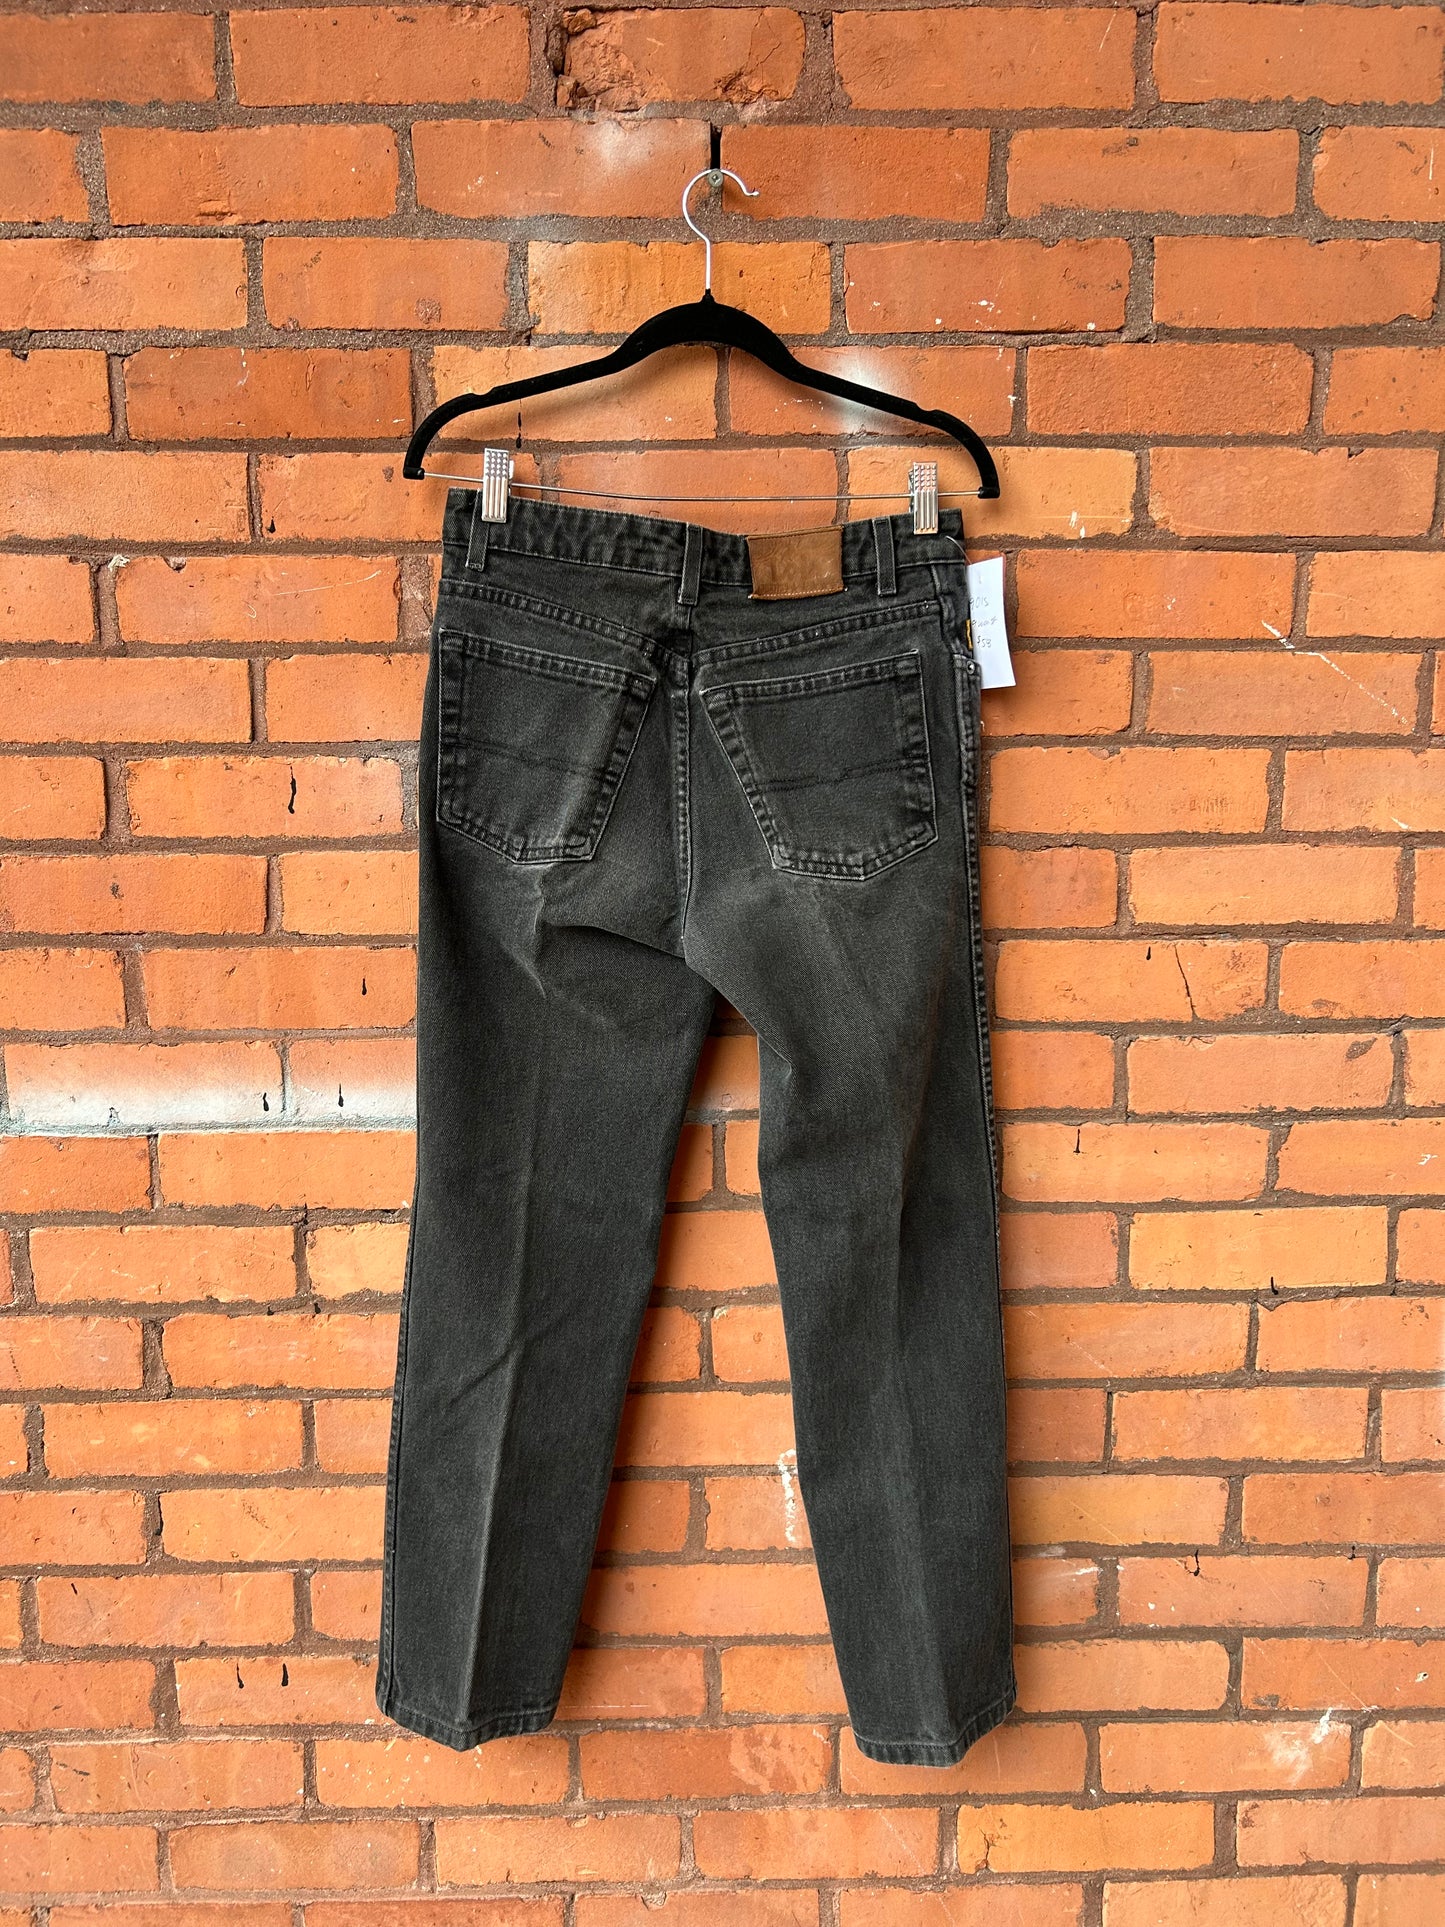 90’s Vintage Faded Black Straight Leg Jeans / 29 Waist